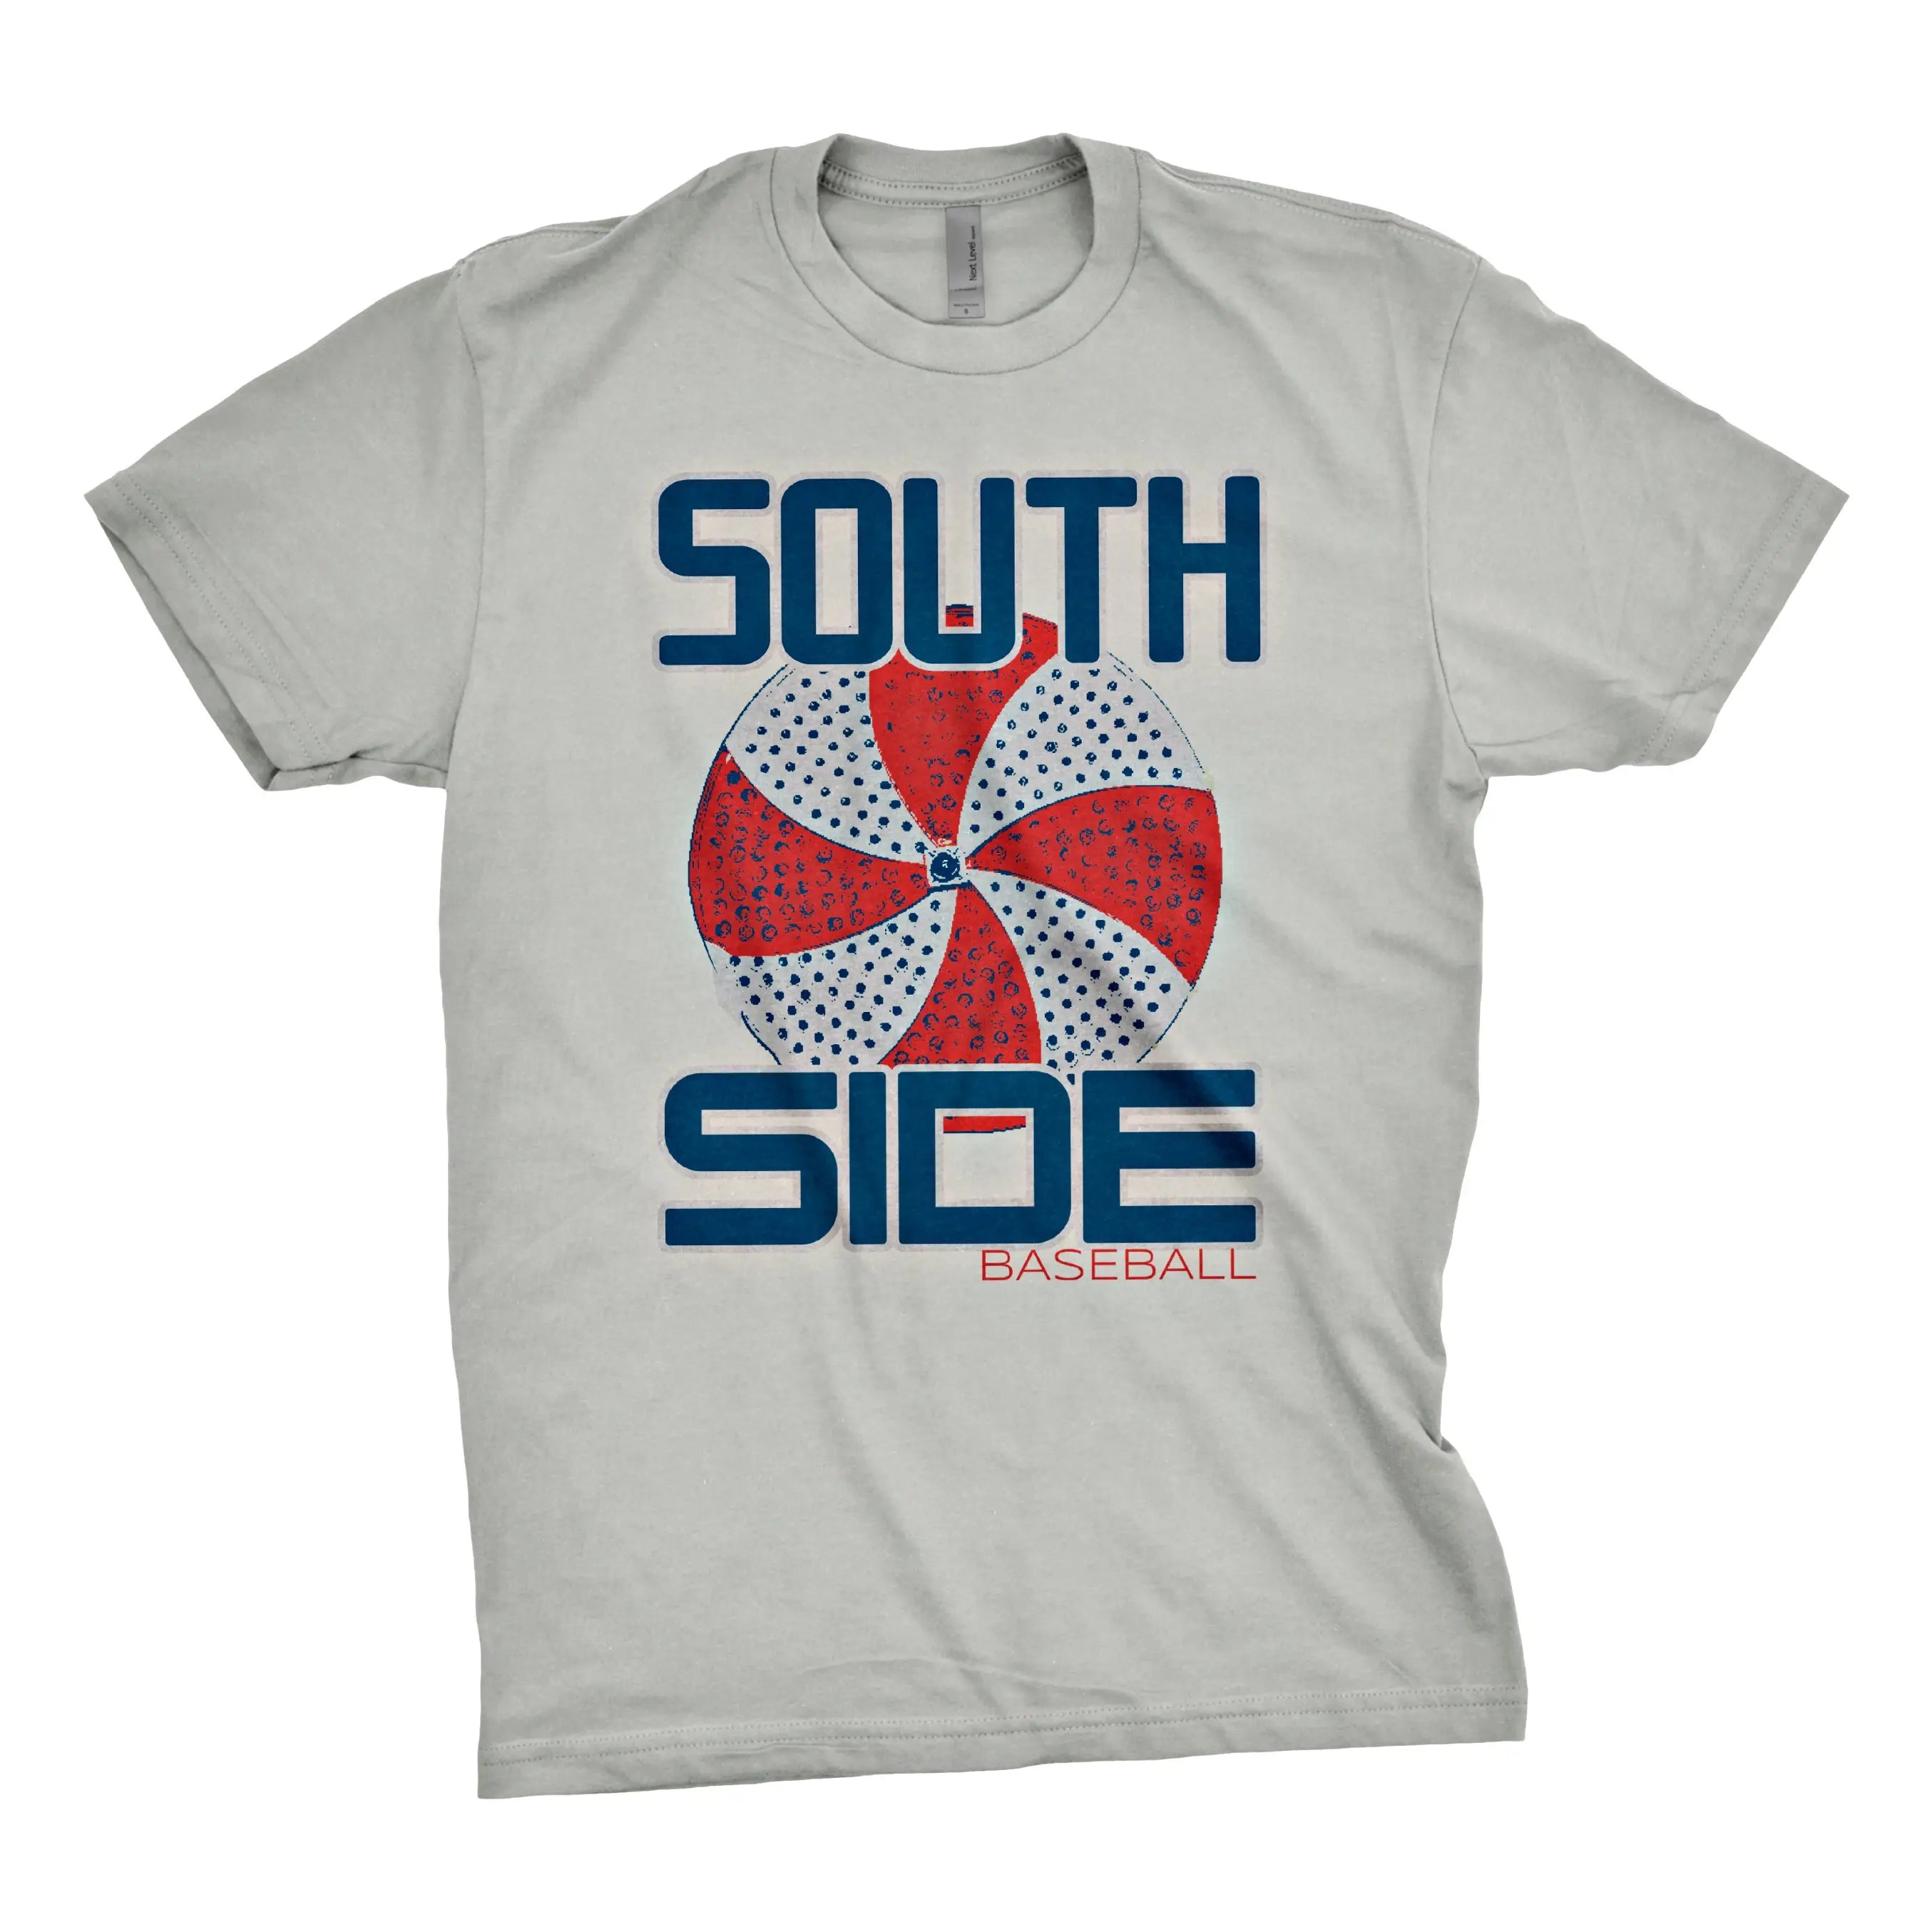 Chitown Clothing South Side Pinwheel Shirt Medium